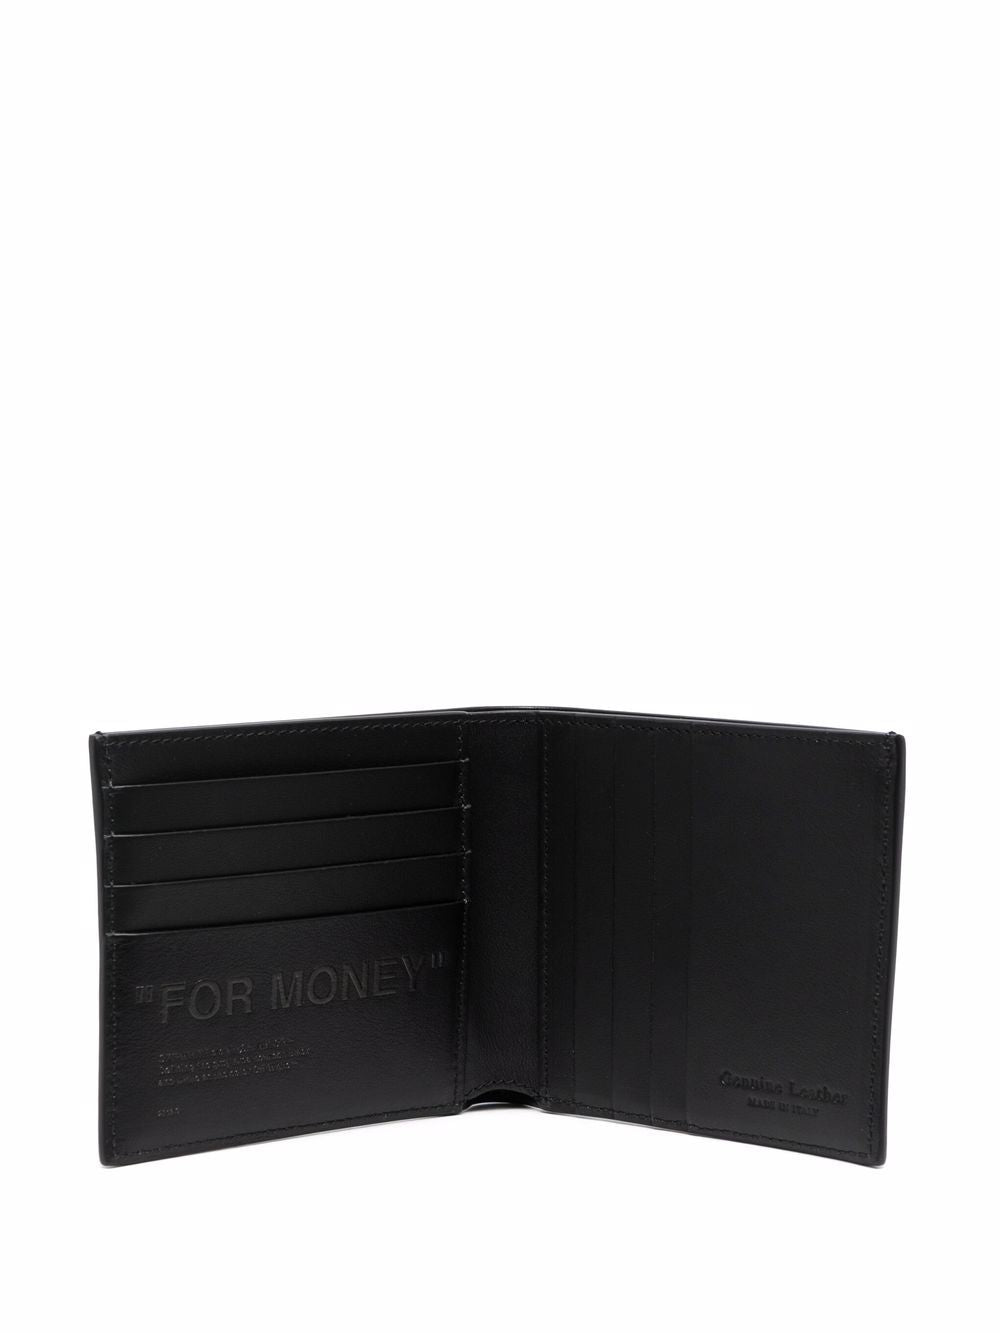 Off-White For Money Debossed Bi-Fold Wallet in Black